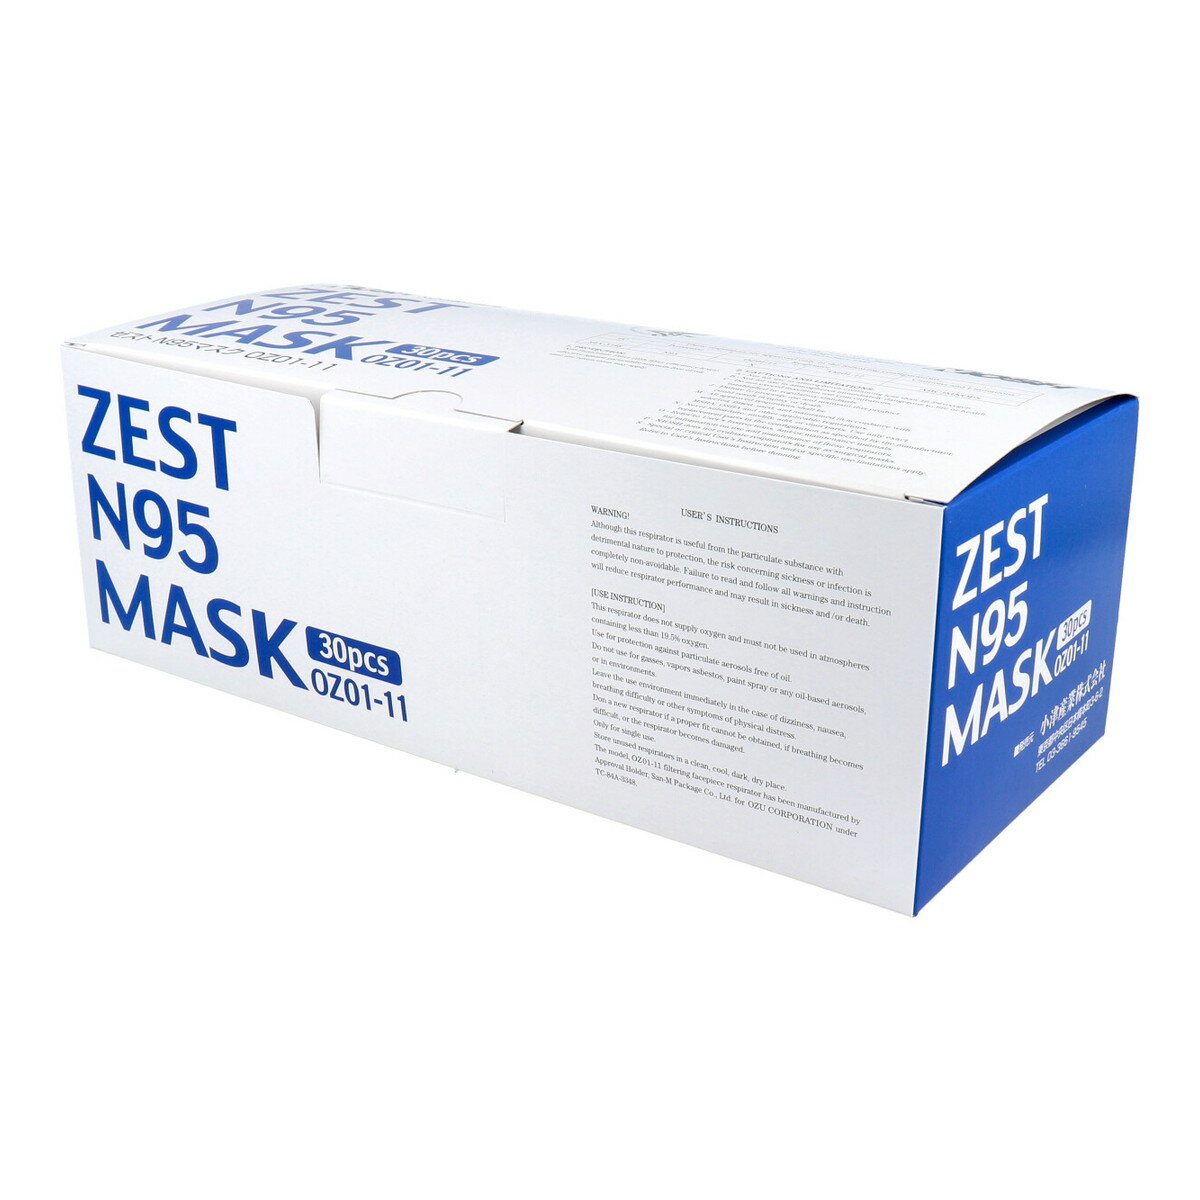 【送料お得 まとめ買い×9個セット】ゼスト ZEST N95マスク 個包装 30枚入 OZ01-11